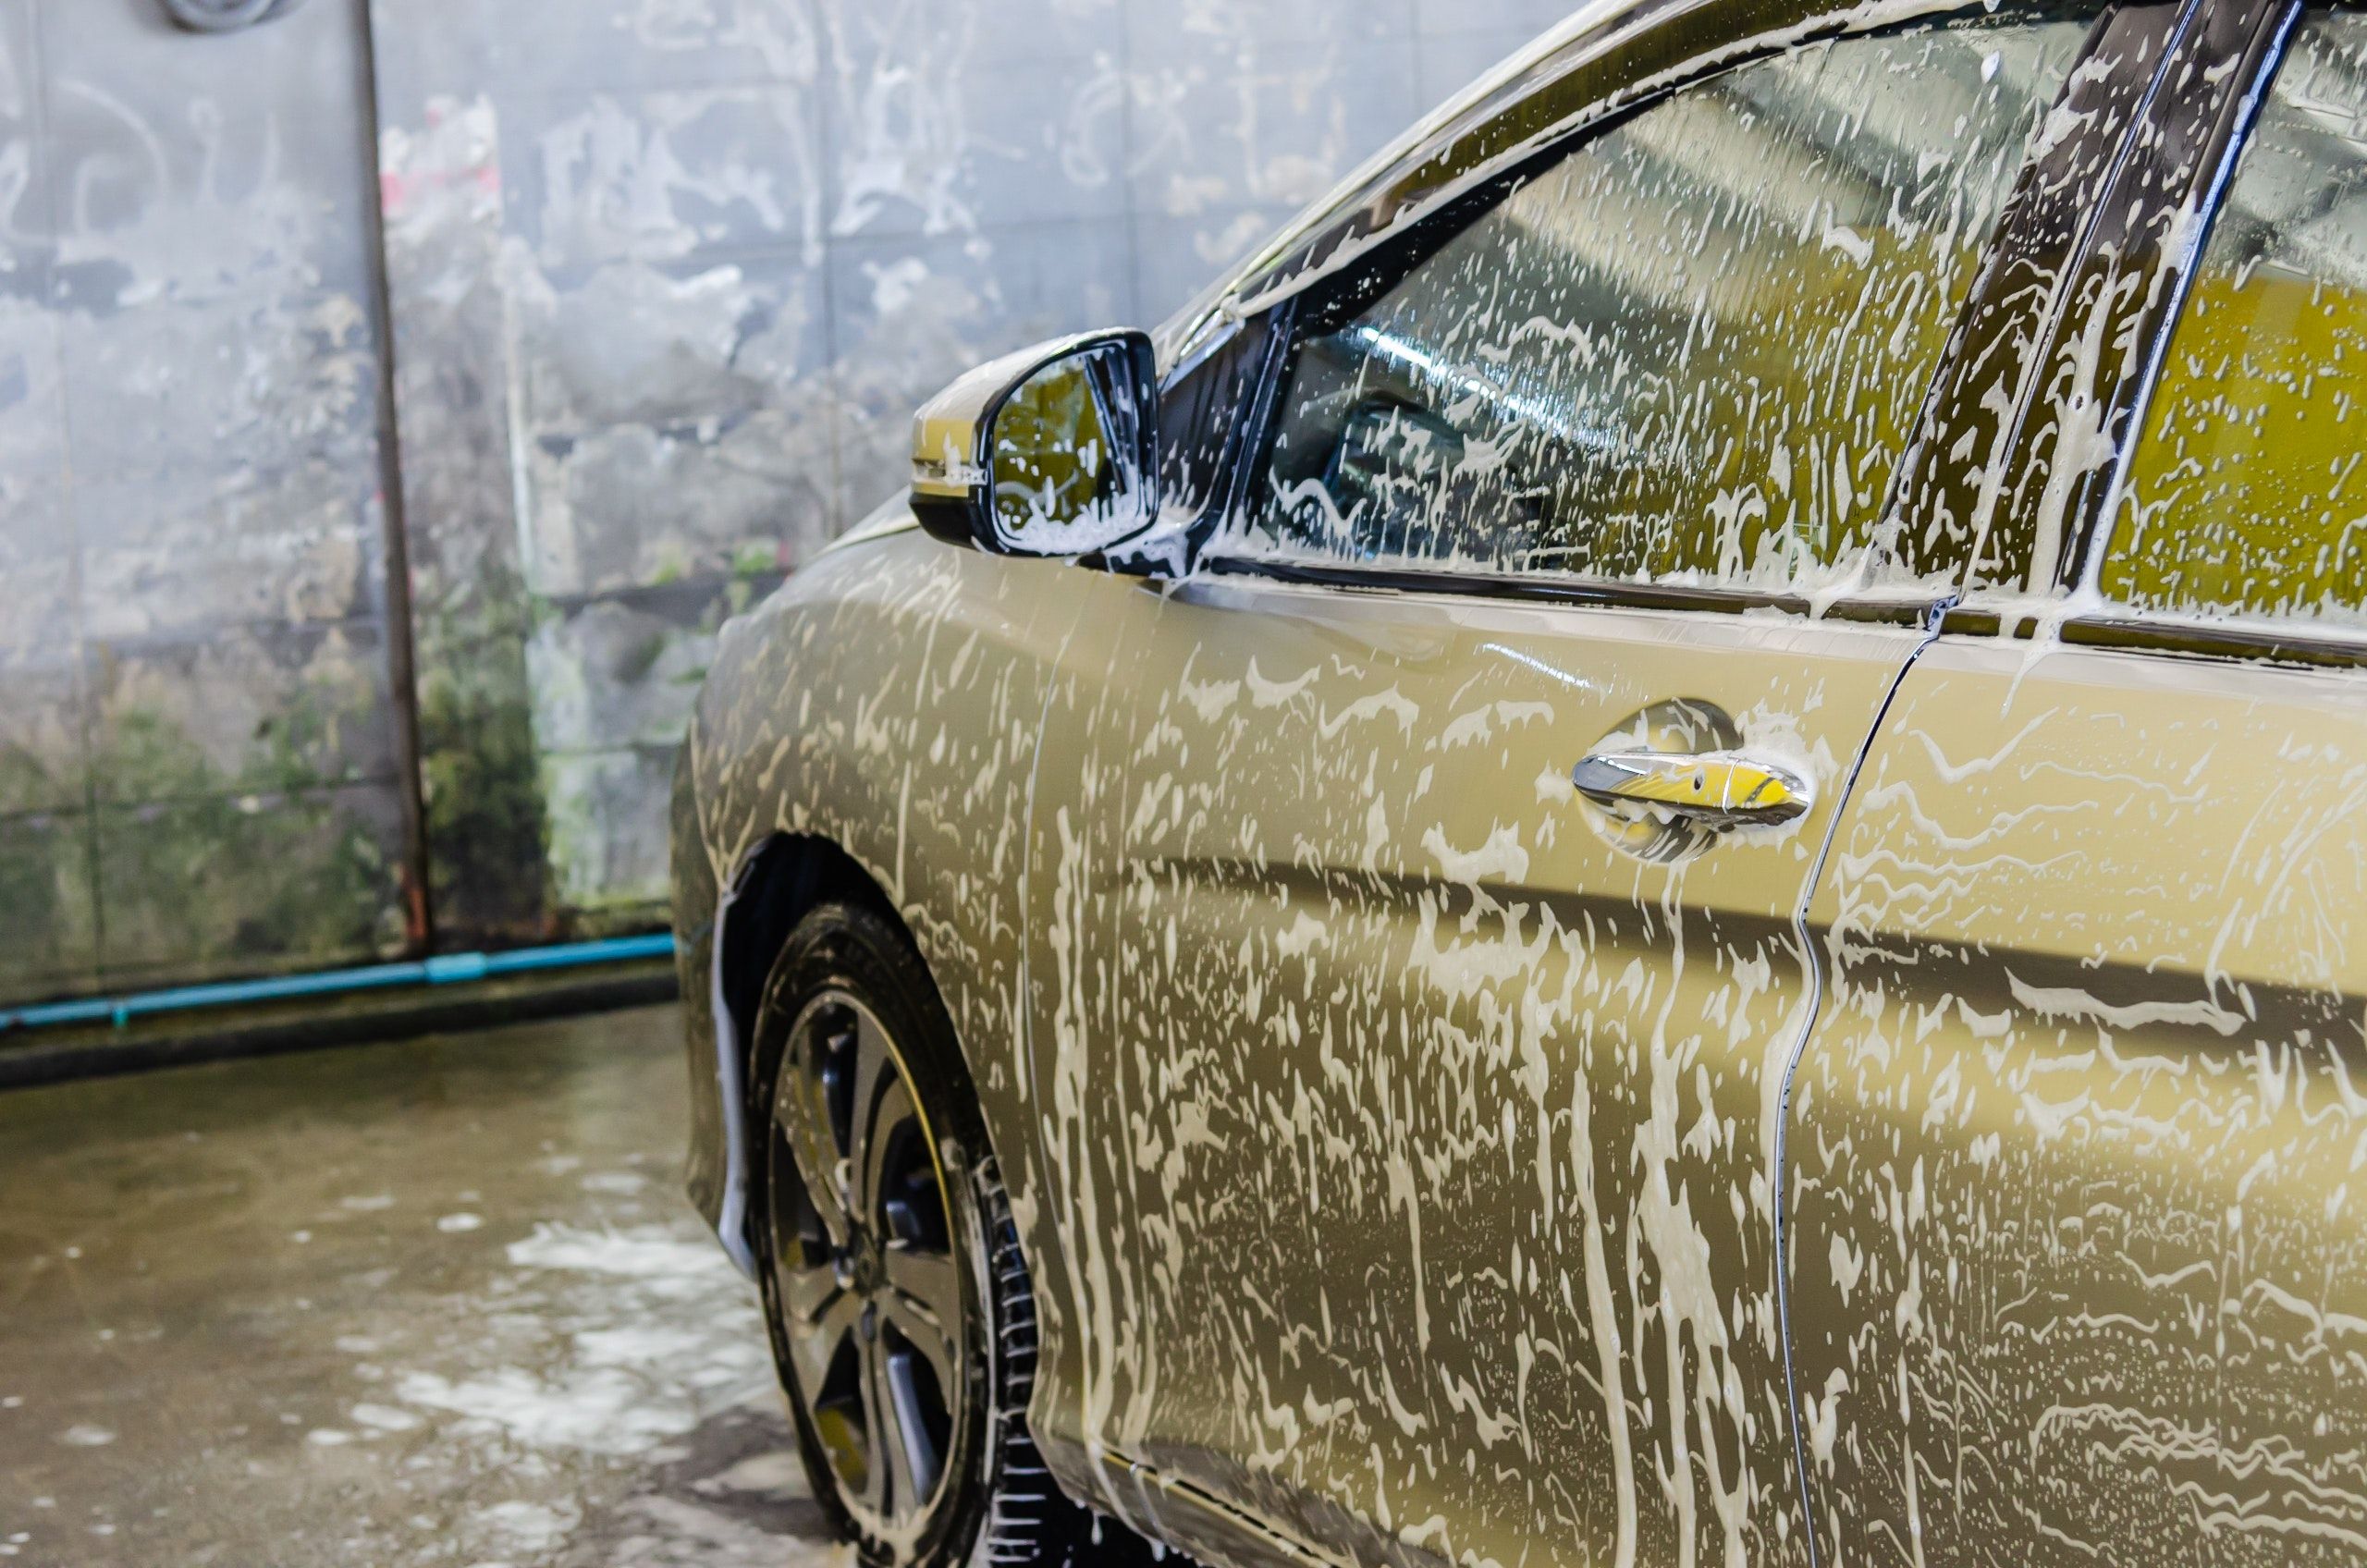 Washing-A-Car